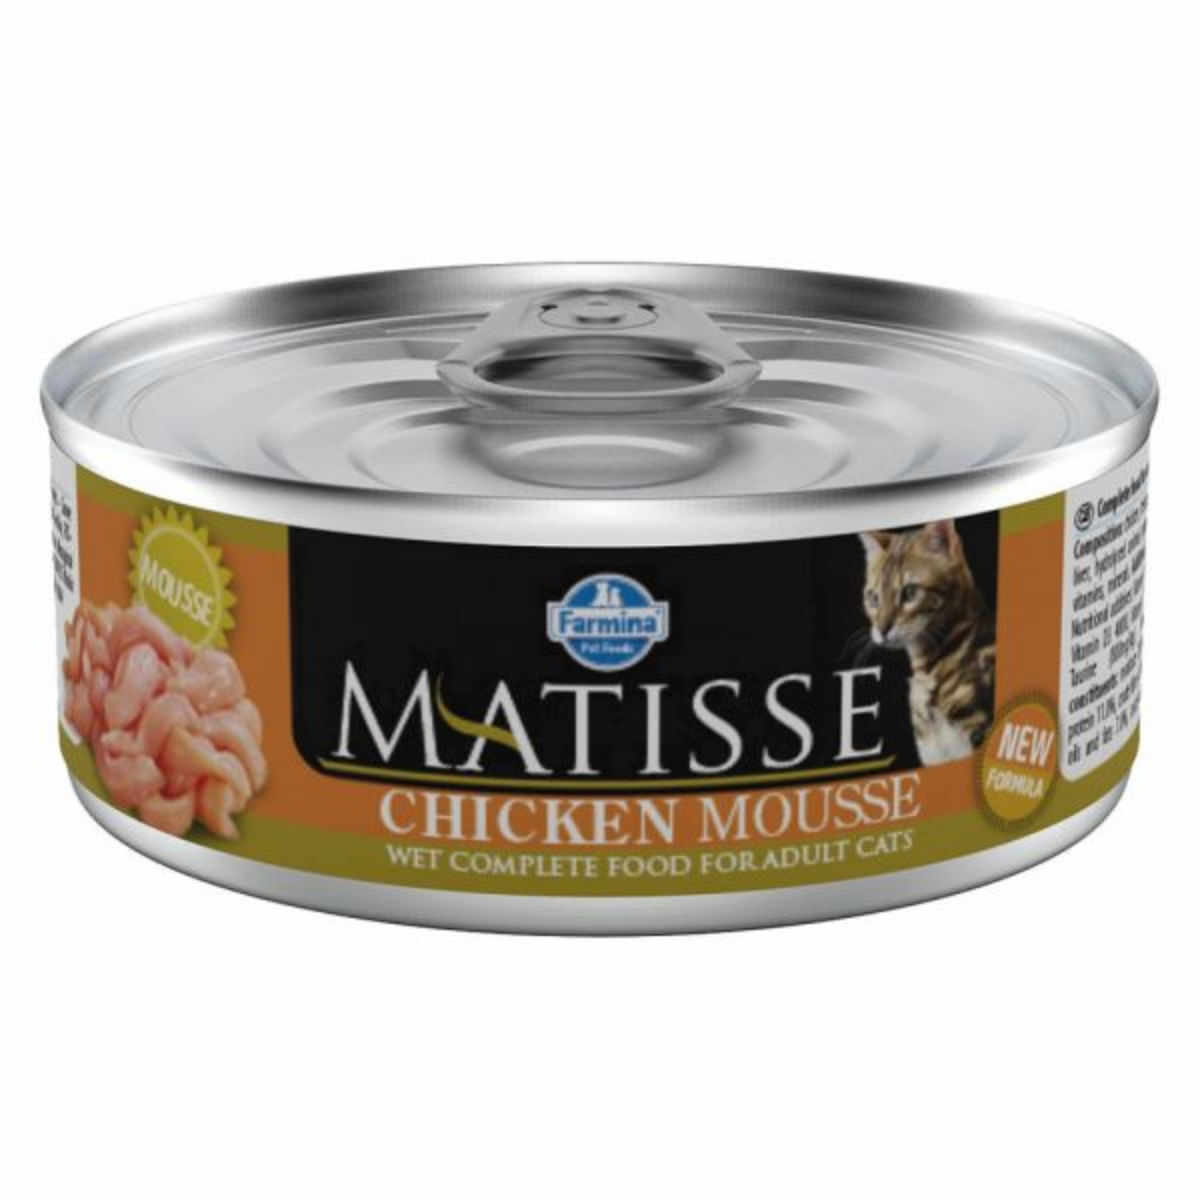 MATISSE, Pui, conservă hrană umedă pisici, (pate), 85g